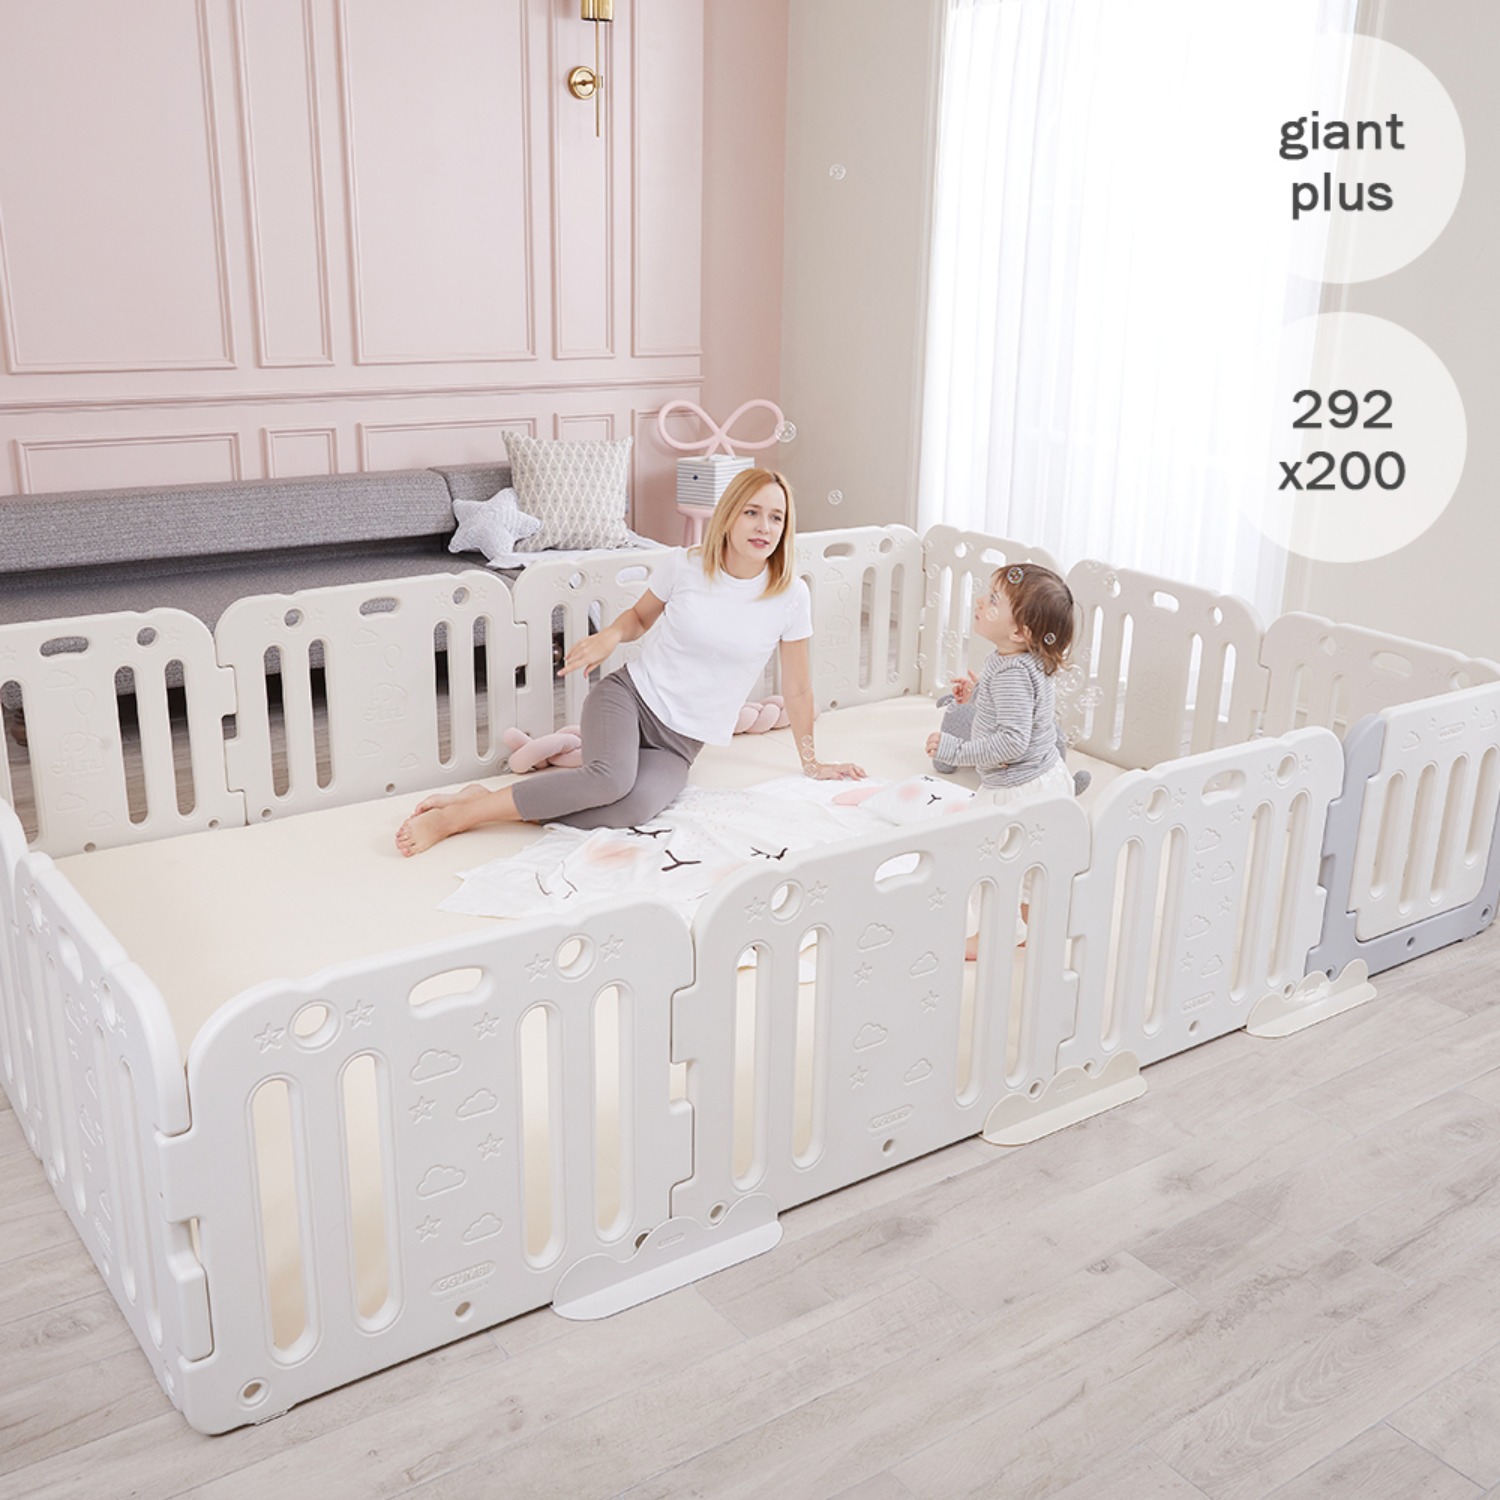 giant plus baby room set 292 x 200